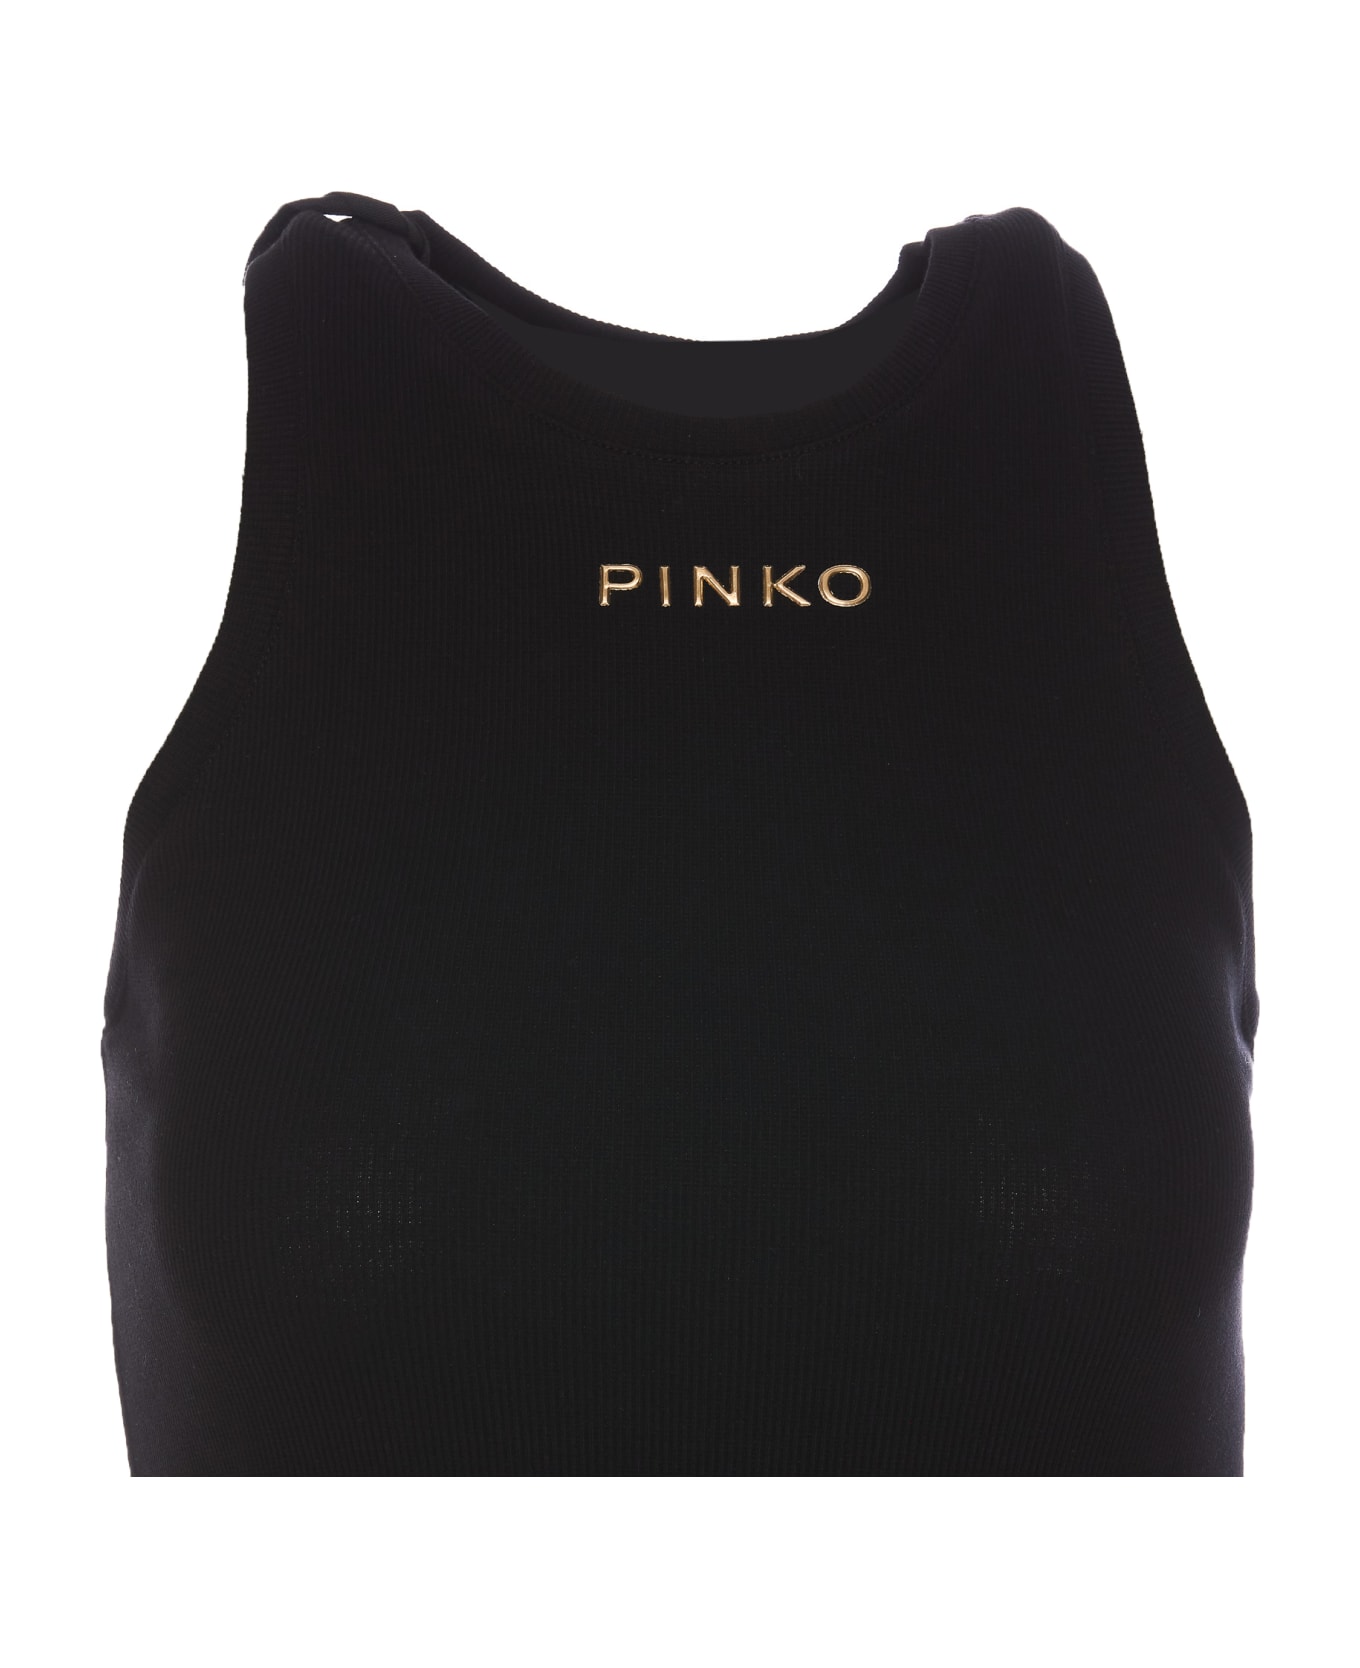 Pinko Distinto Tank Top - Black